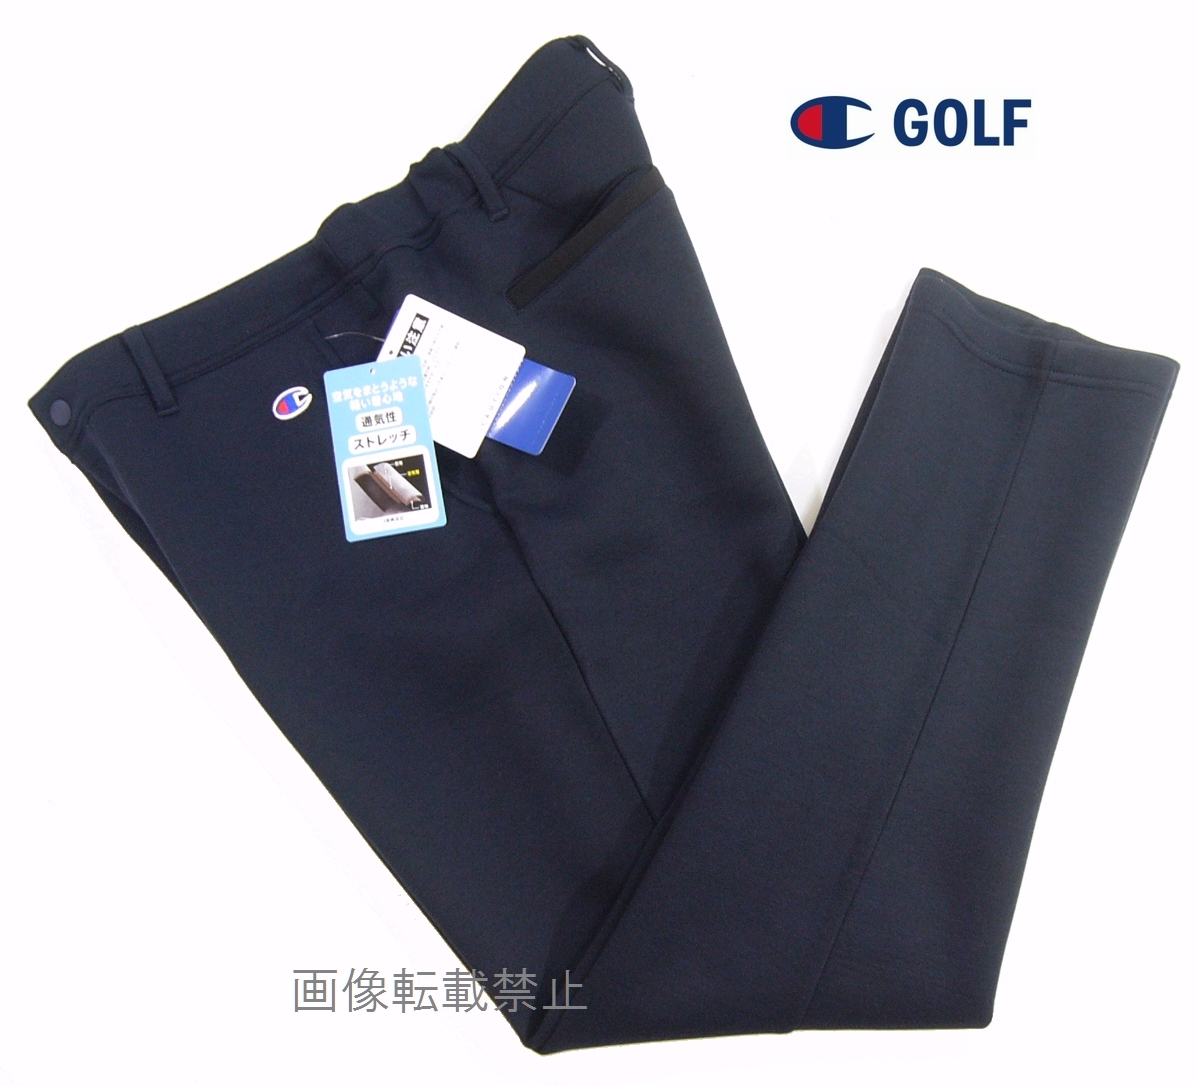 新品 チャンピオン ゴルフ 軽量 【Wrap-Air】スウェット ゴルフ パンツ XL/83-89 紺 ネイビー 裏面メッシュ 通気性 Champion GOLFの画像1